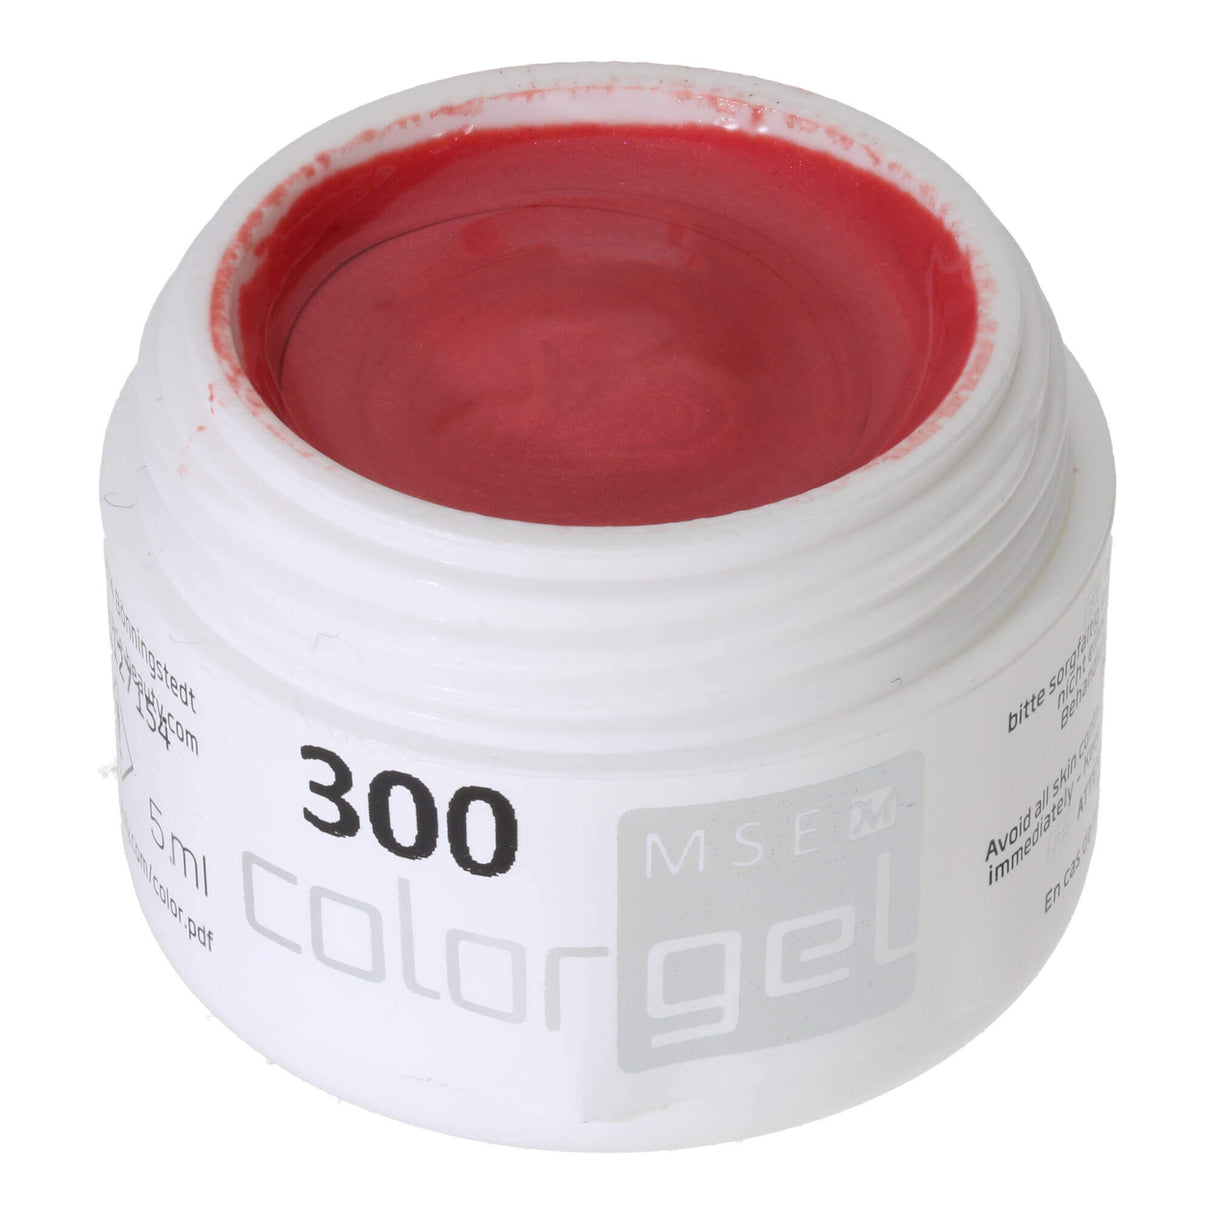 # 300 Premium EFFEKT Color Gel 5ml Rouge framboise pâle aux reflets chatoyants